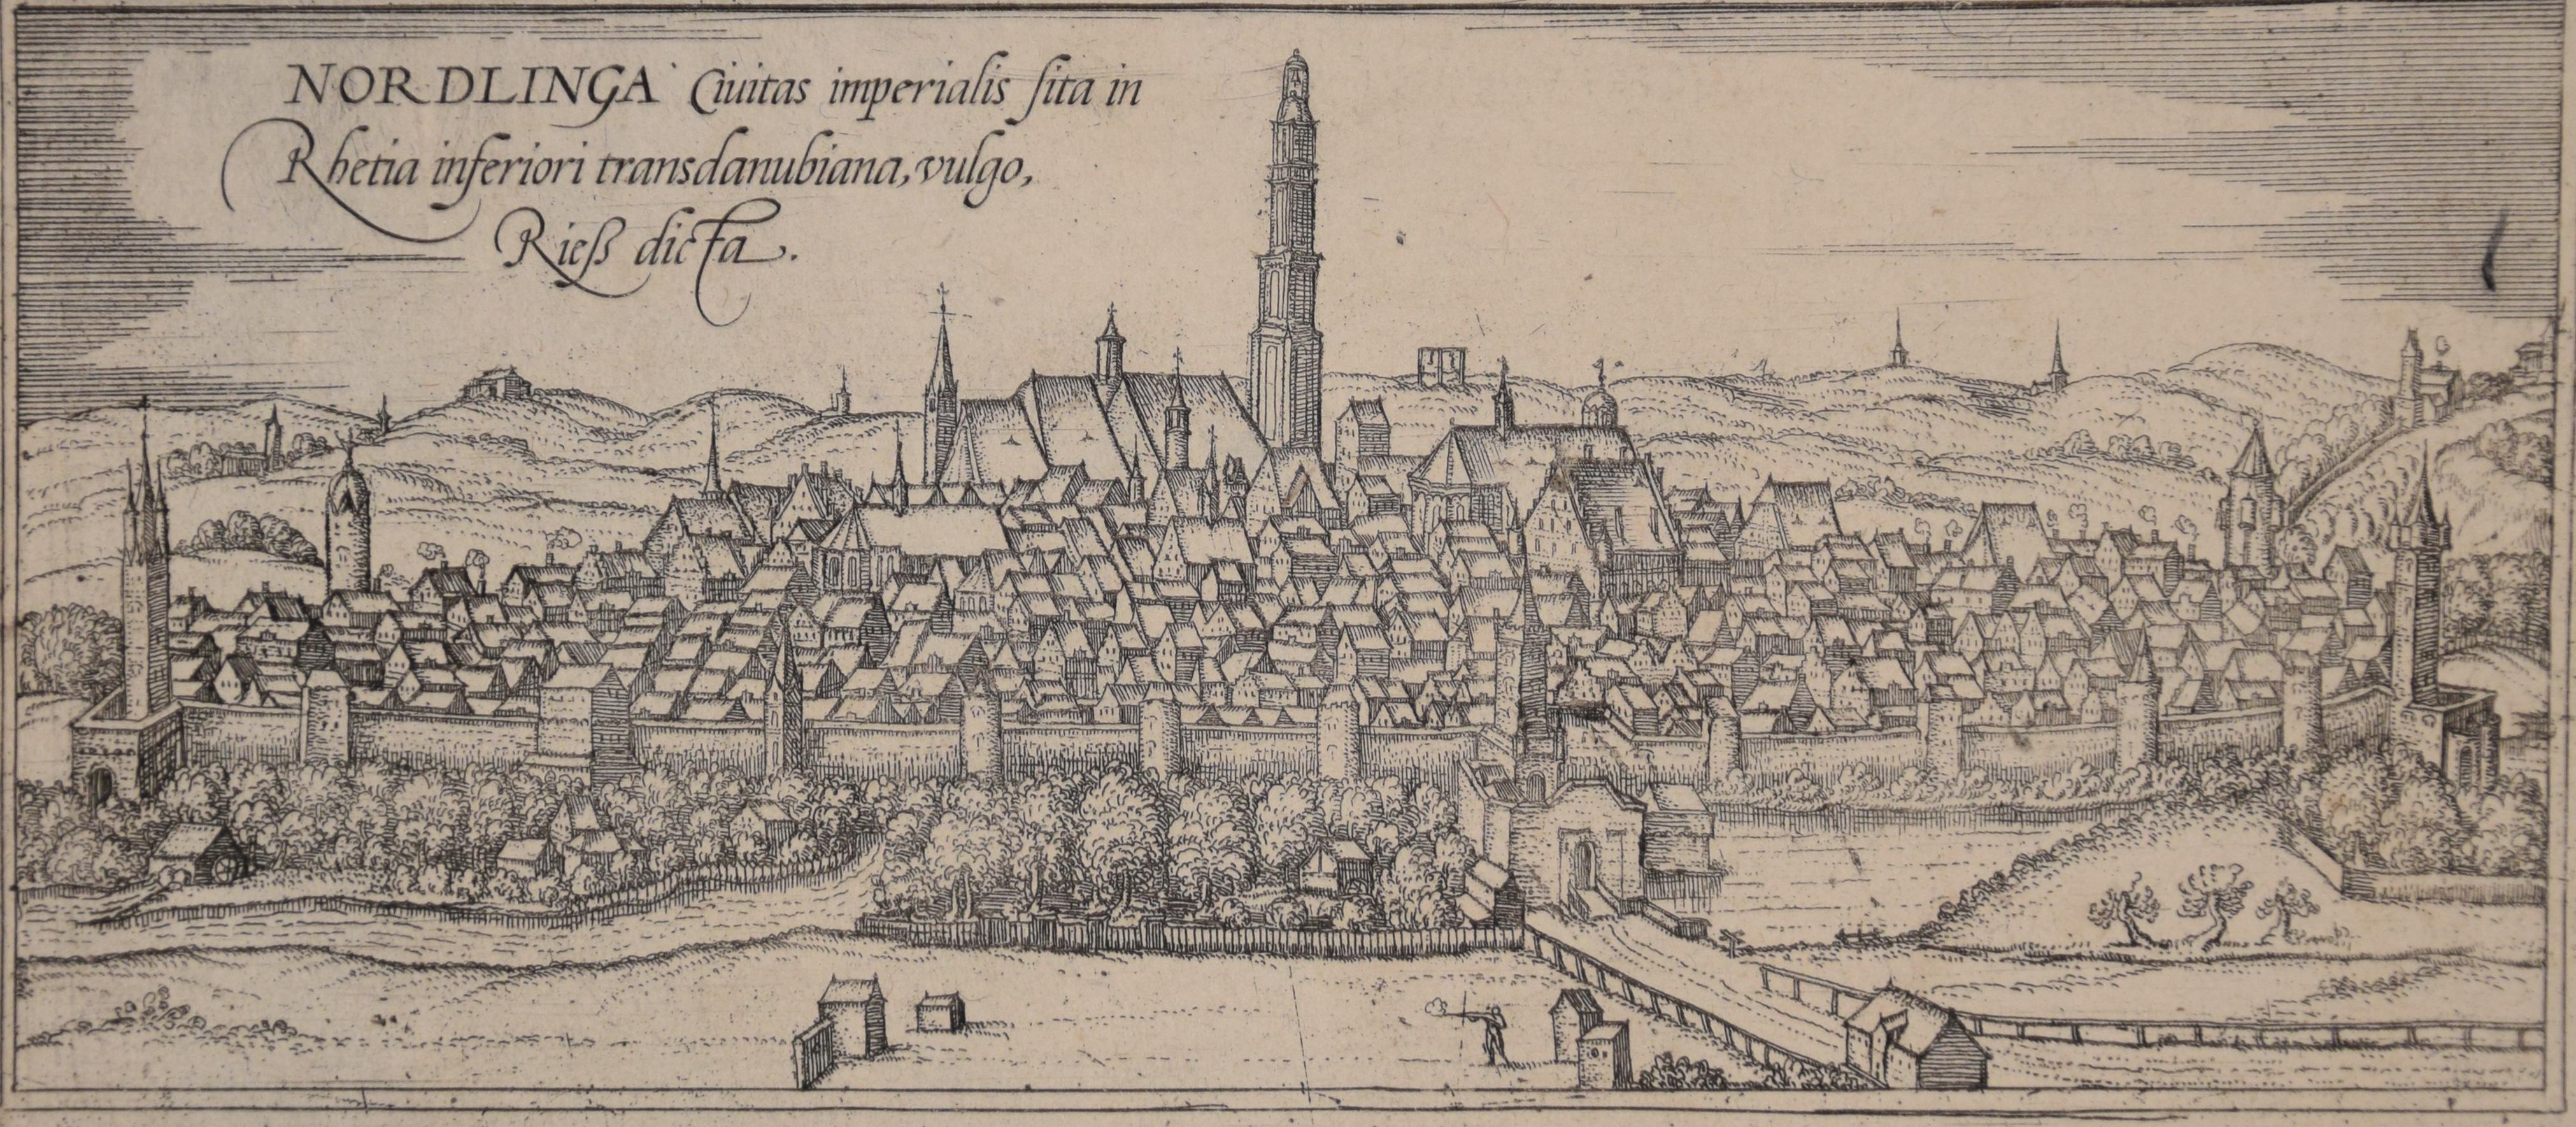 Nordlingen, Antique Map from